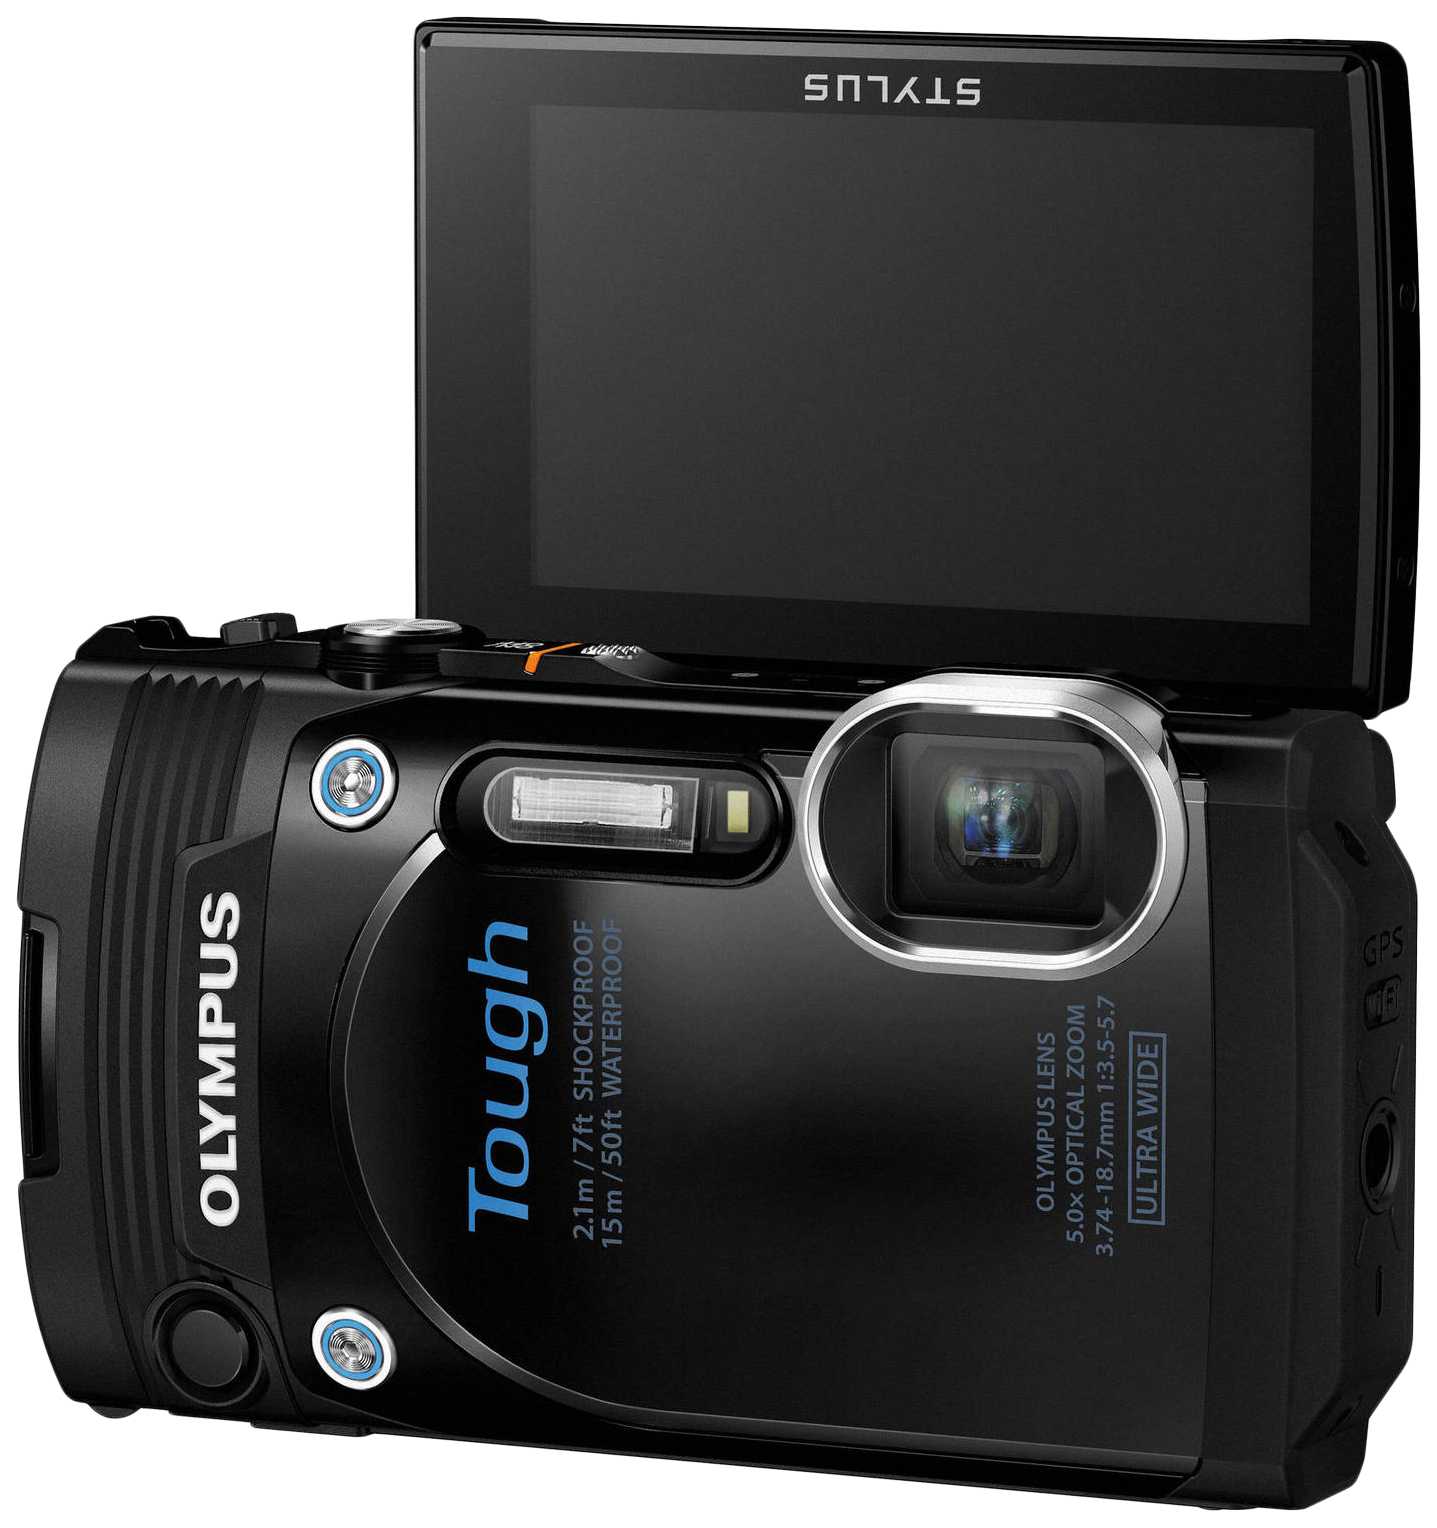 Olympus tough tg-630 (красный) - купить , скидки, цена, отзывы, обзор, характеристики - фотоаппараты цифровые